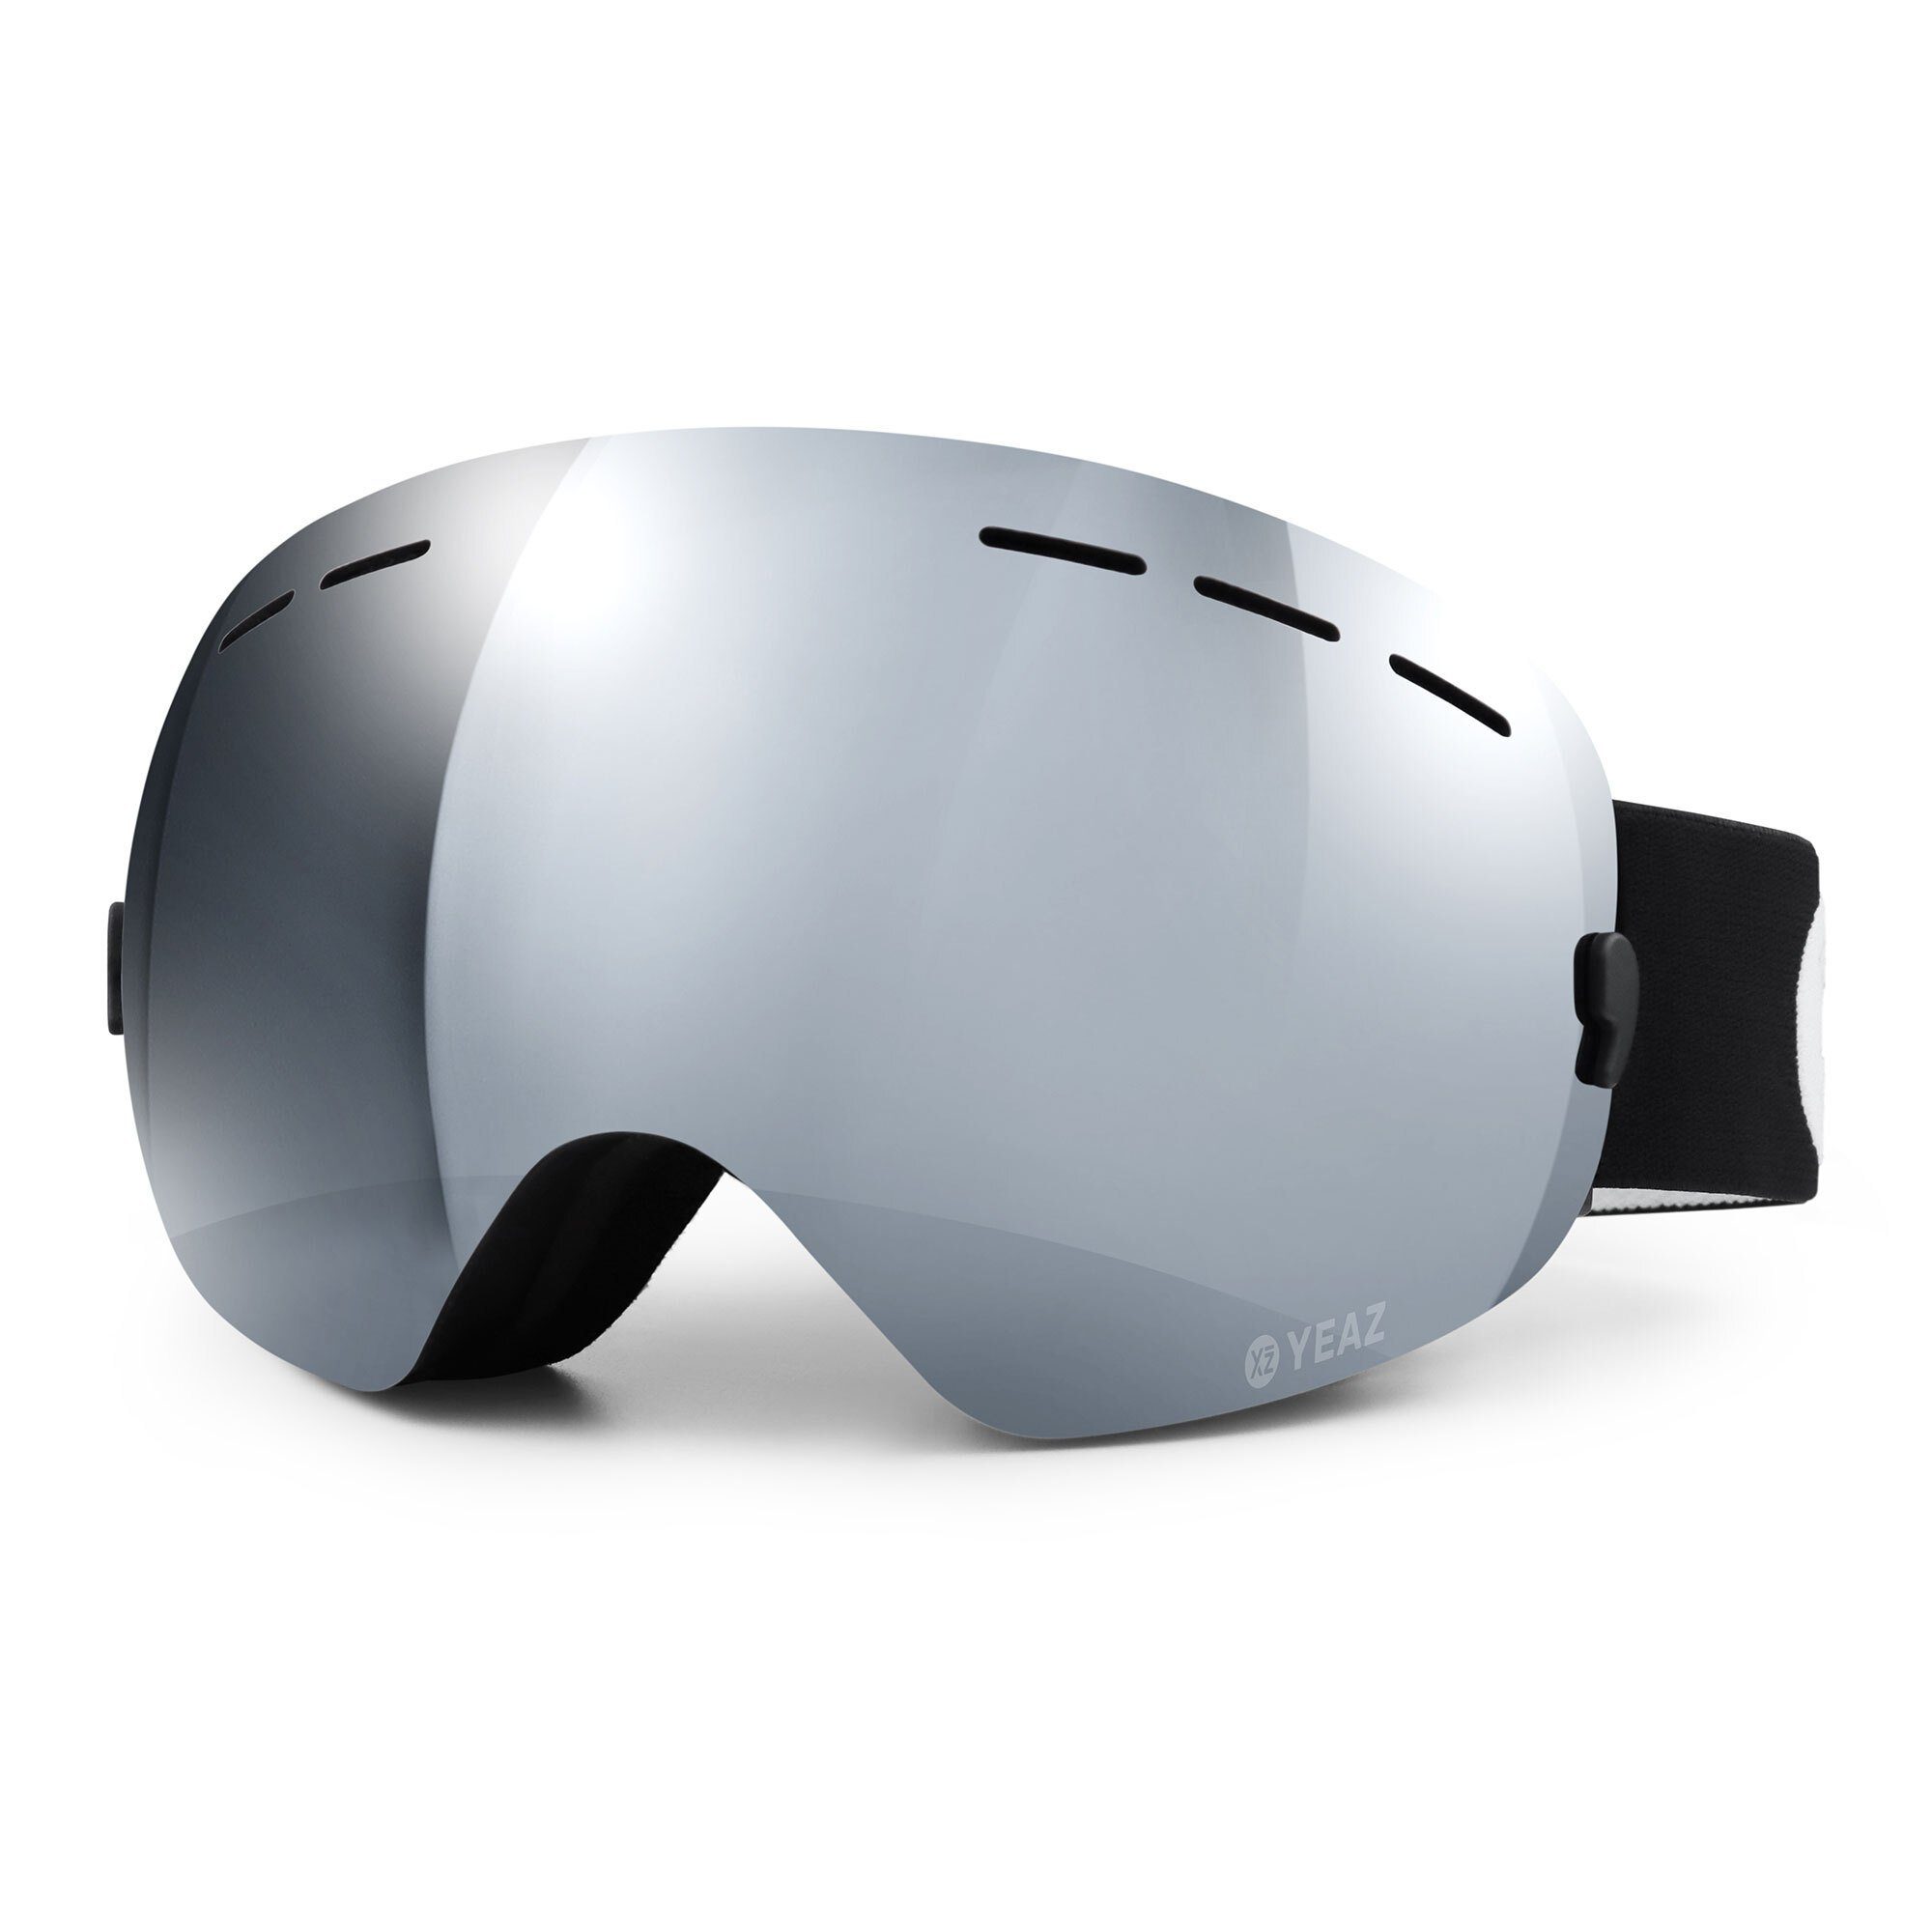 YEAZ Skibrille XTRM-SUMMIT ski- snowboardbrille ohne rahmen, Premium-Ski-  und Snowboardbrille für Erwachsene und Jugendliche, Blendschutz &  Anti-Fog-Beschichtung (Made in Italy) für klare Sicht